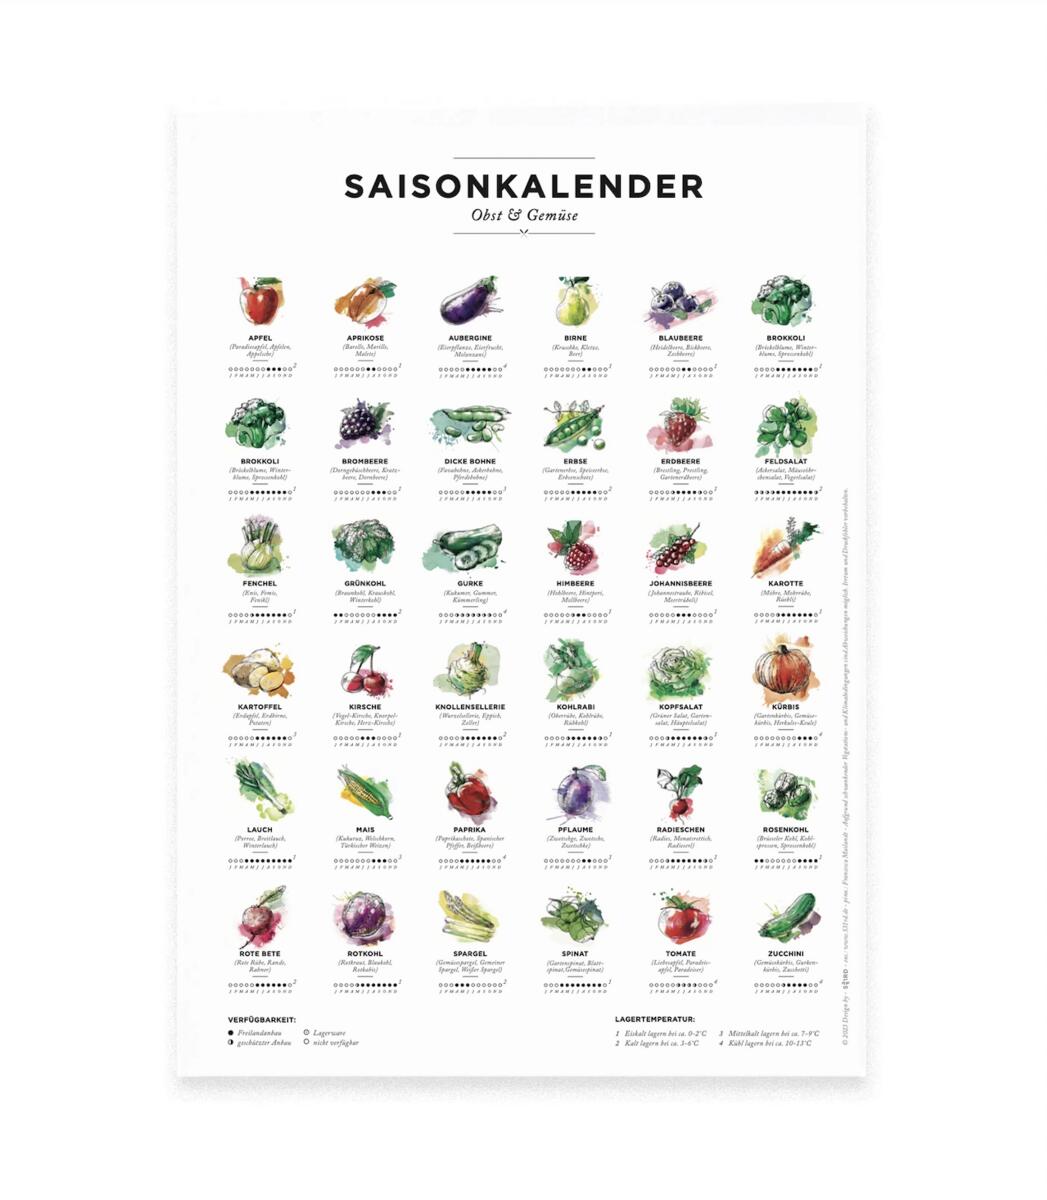 531 Rheinland Design - Saisonkalender Obst & Gemüse, Küchen Deko, wall  decor, Poster / Plakat in Farbe | Avocadostore